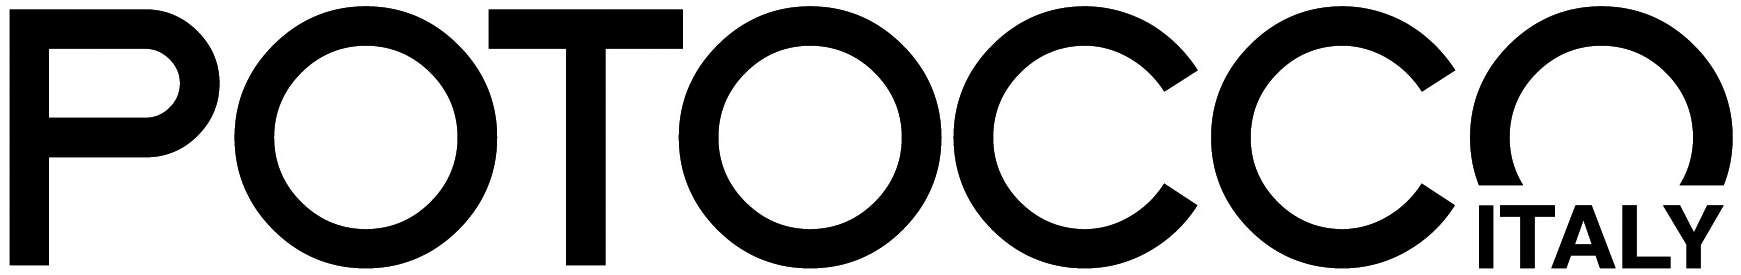 Potocco Logo - Potocco dealer